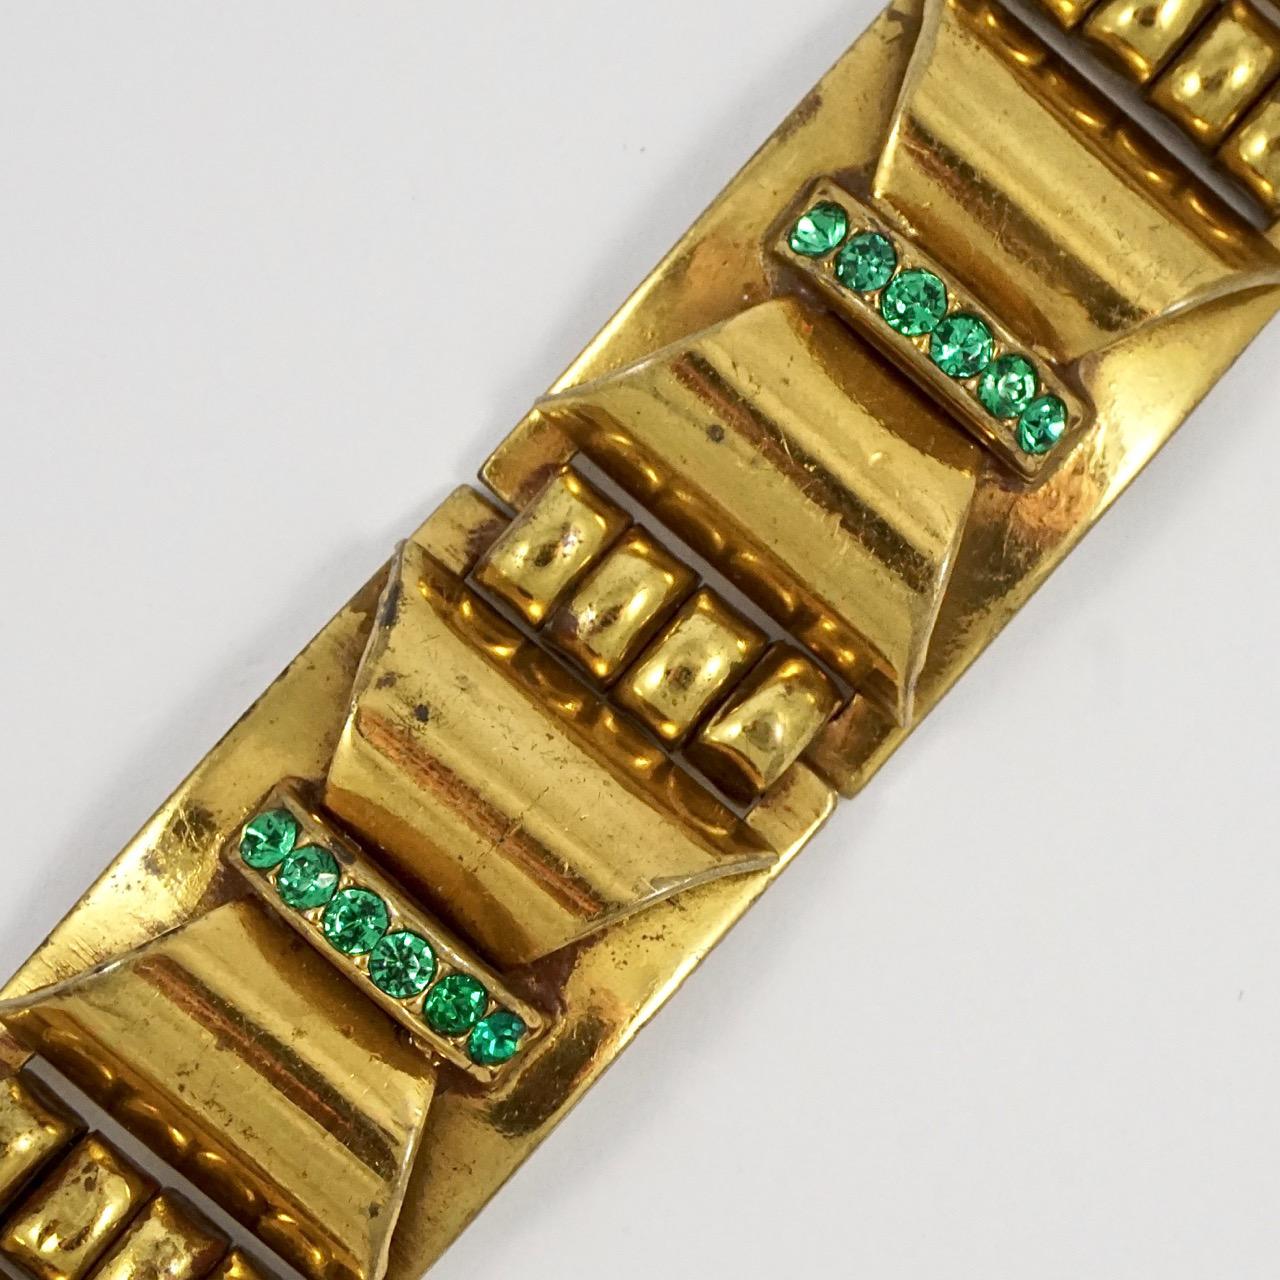 Magnifique bracelet à maillons en laiton, présentant un design Art Déco classique avec de jolis strass verts. Il est probablement d'origine française. Longueur 17,8 cm / 7 pouces et largeur 2,15 cm / 0,84 pouce. Le bracelet a été porté souvent, il y